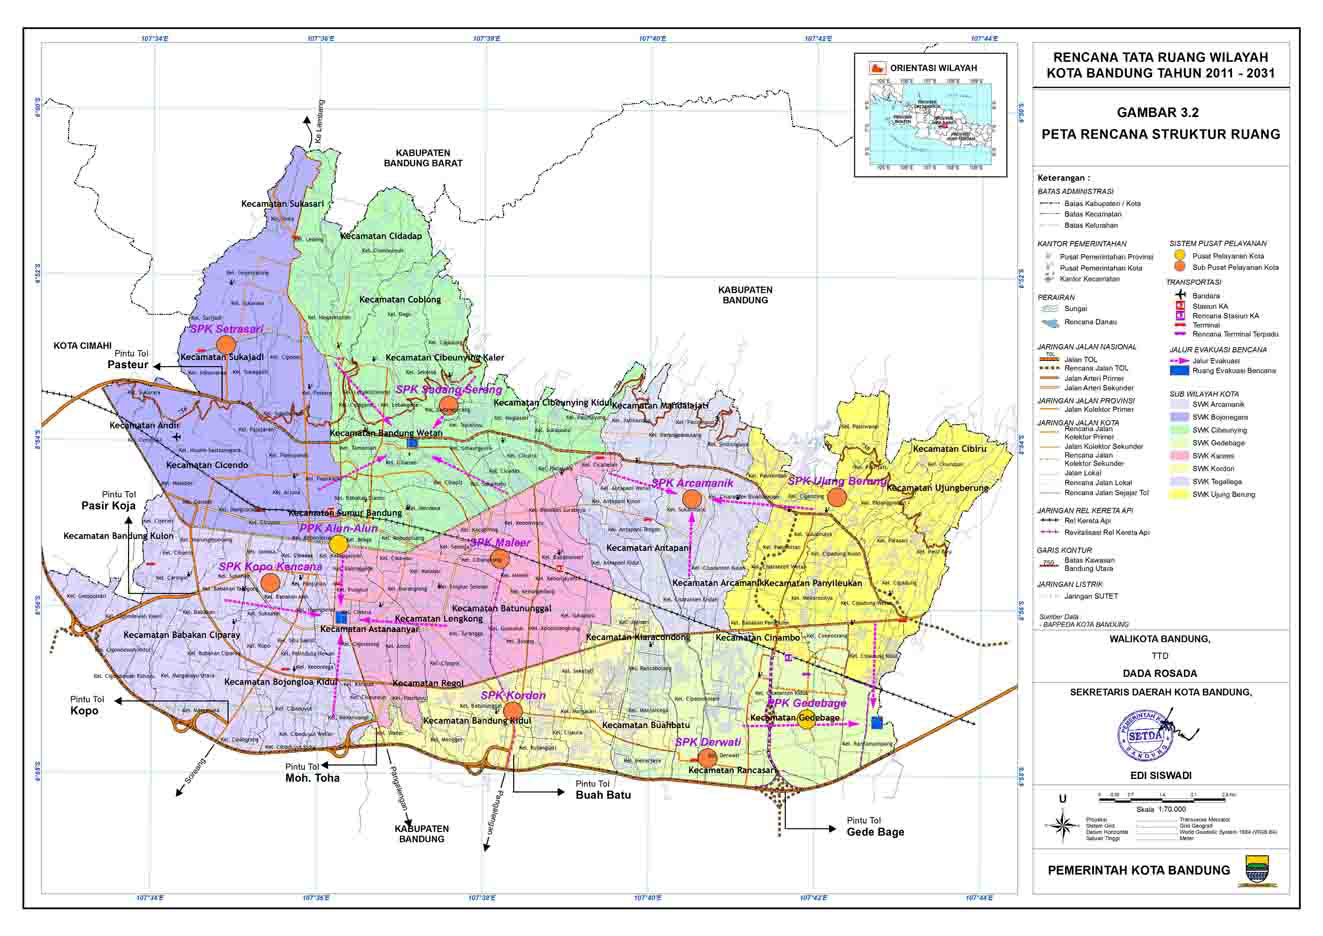 Peta Kota: Peta Kota Bandung